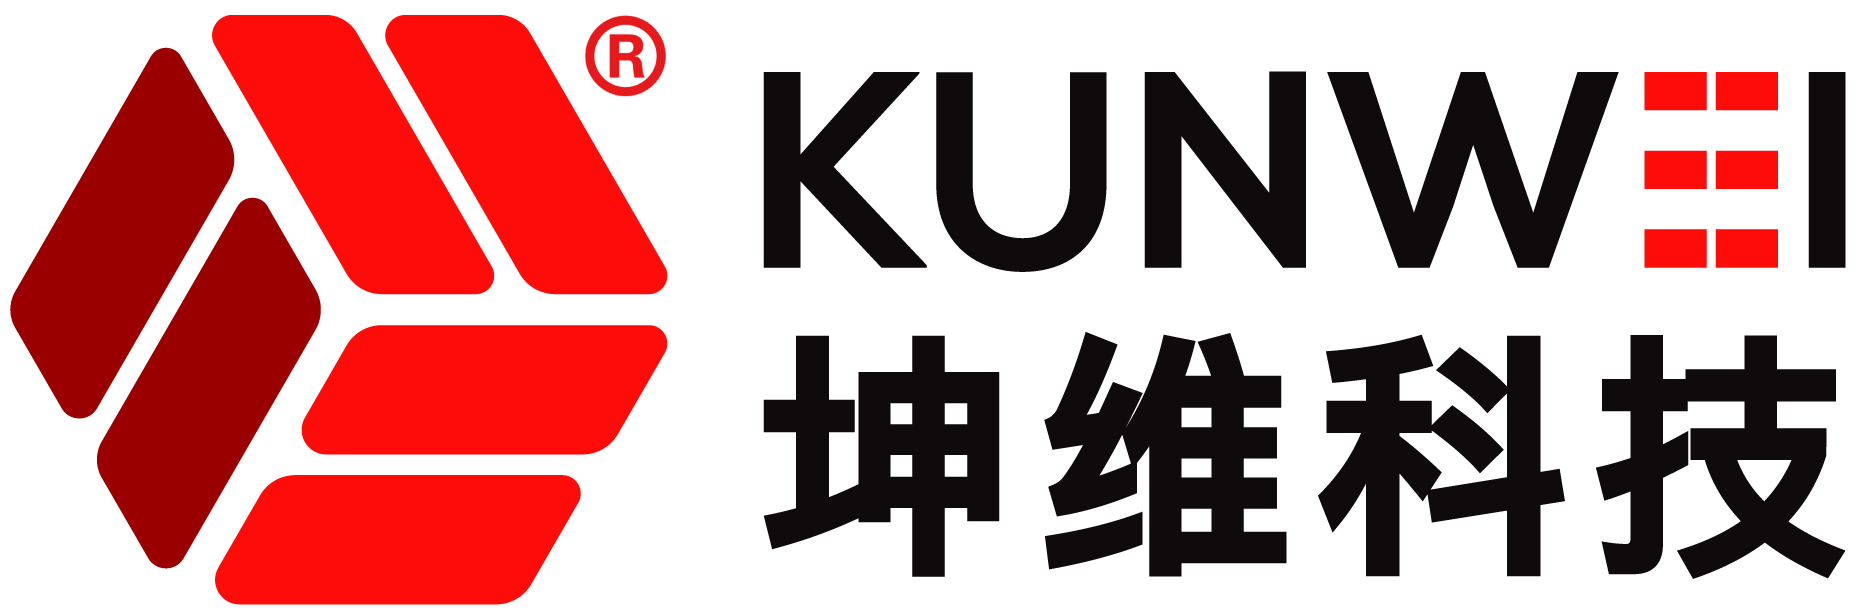 logotipo de kunwei recortado 1 1